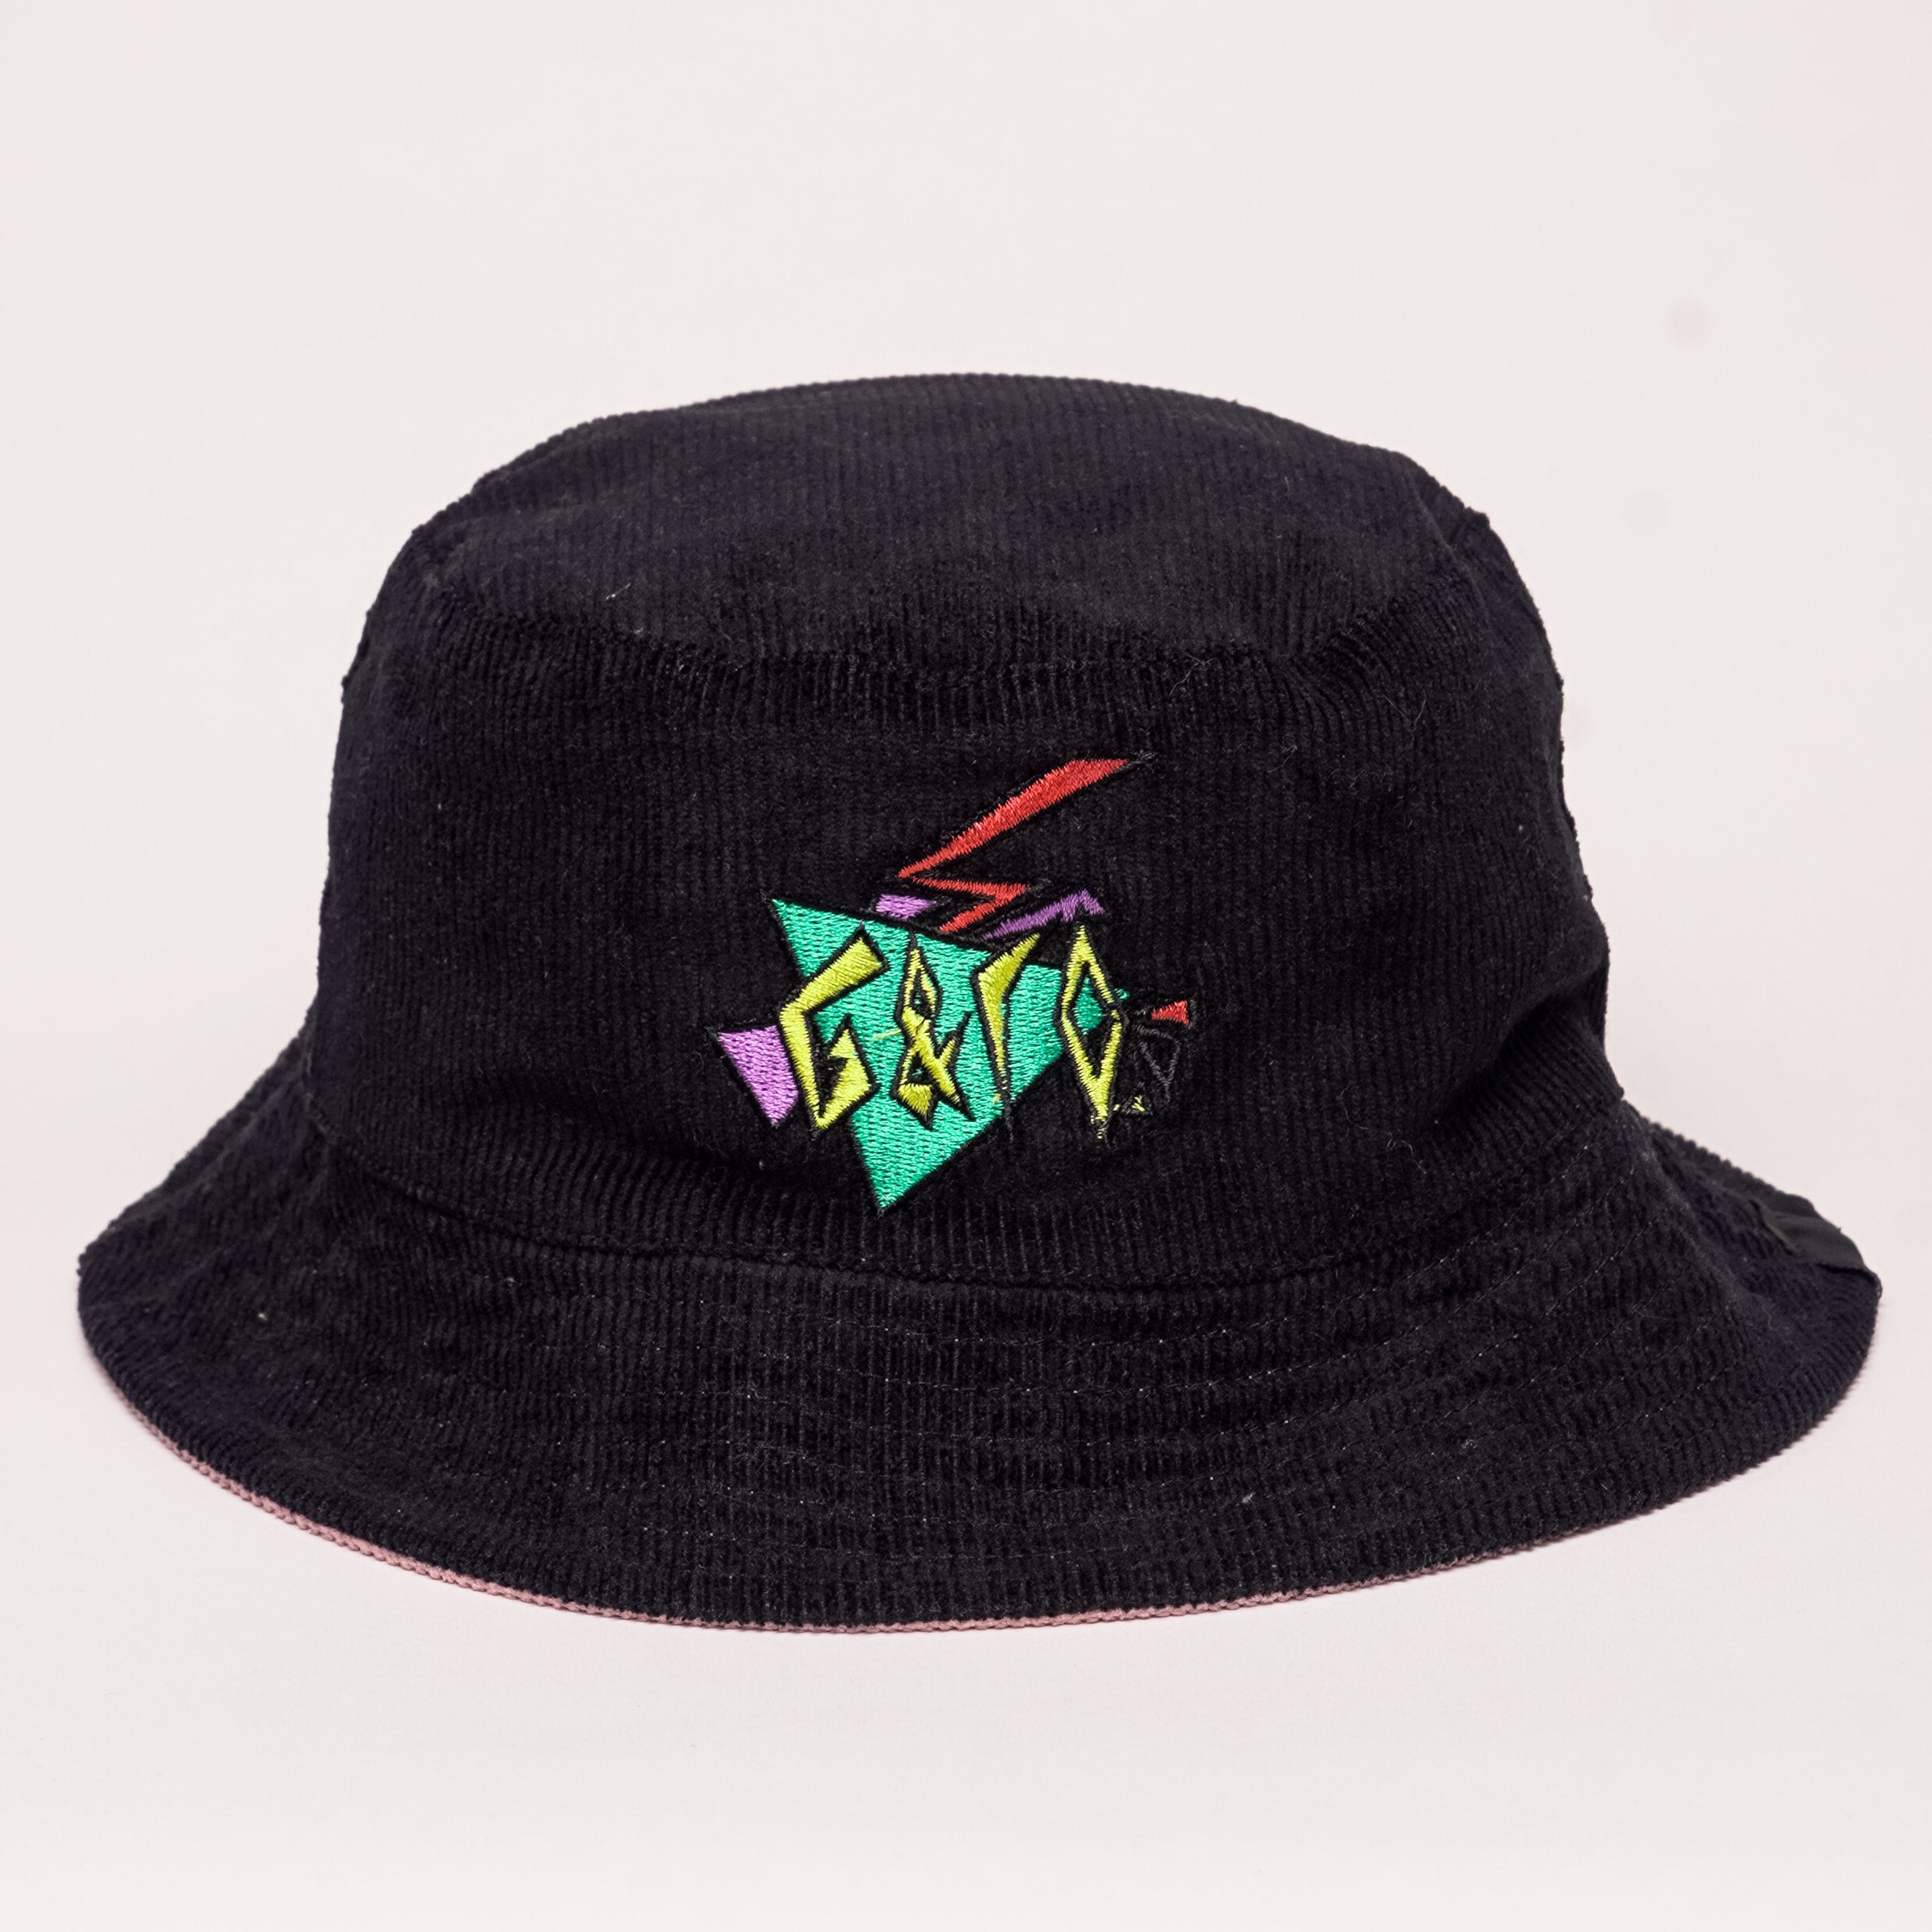 The Retro / Diamond Reversible Bucket Hat